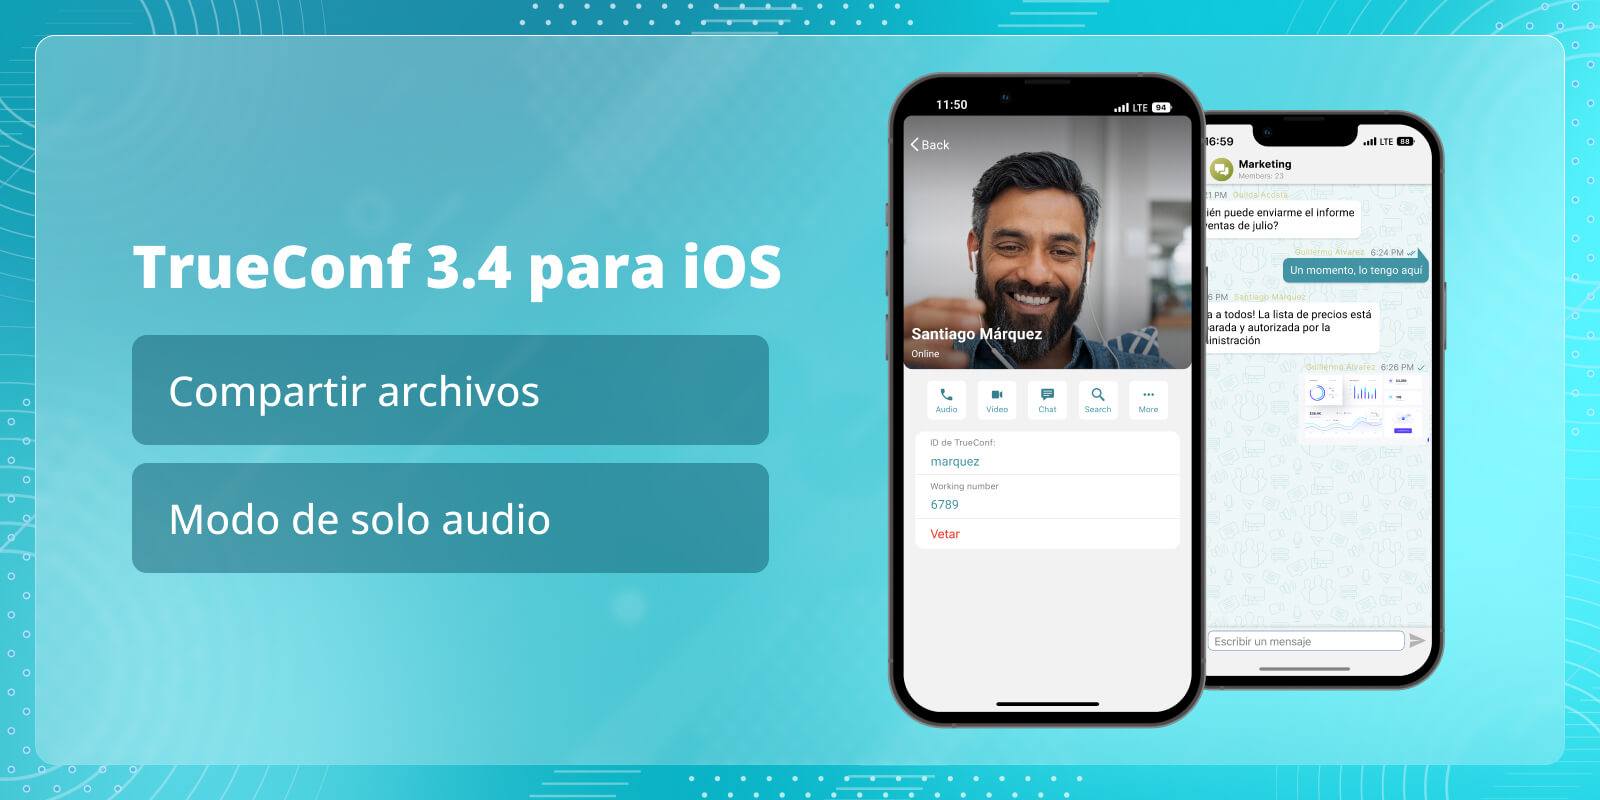 TrueConf 3.4 para iOS: Compartir archivos y modo de solo audio 6